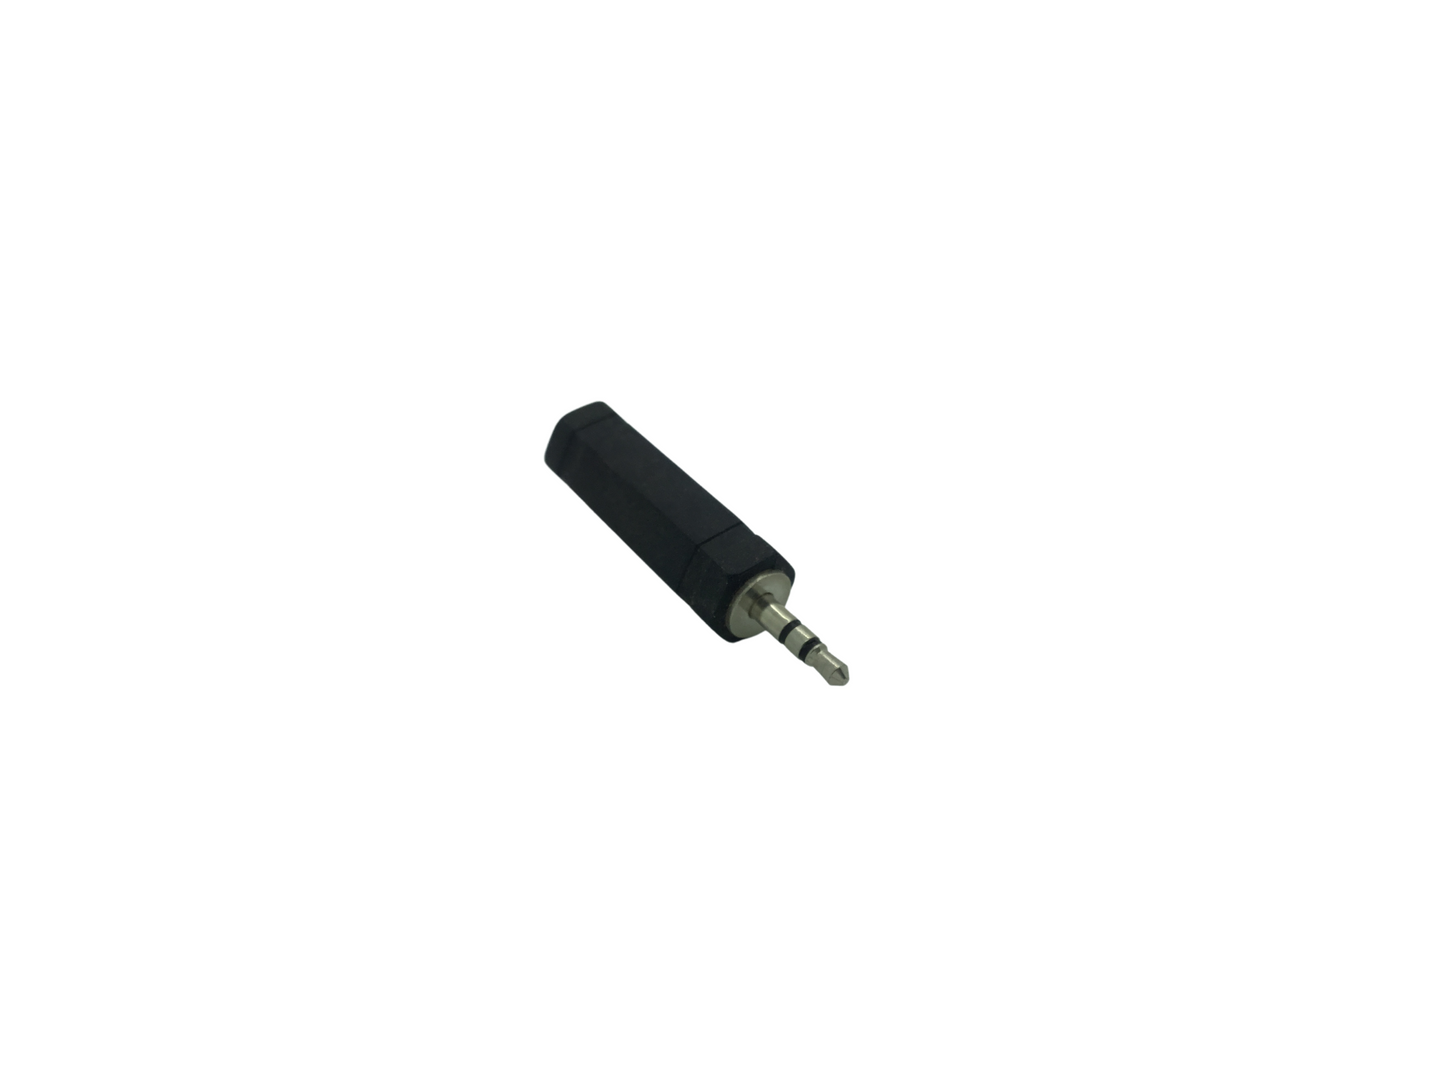 3.5mm 3 Pole Stereo Jack Plug to 6.35mm Stereo Jack Socket Adaptor - Black